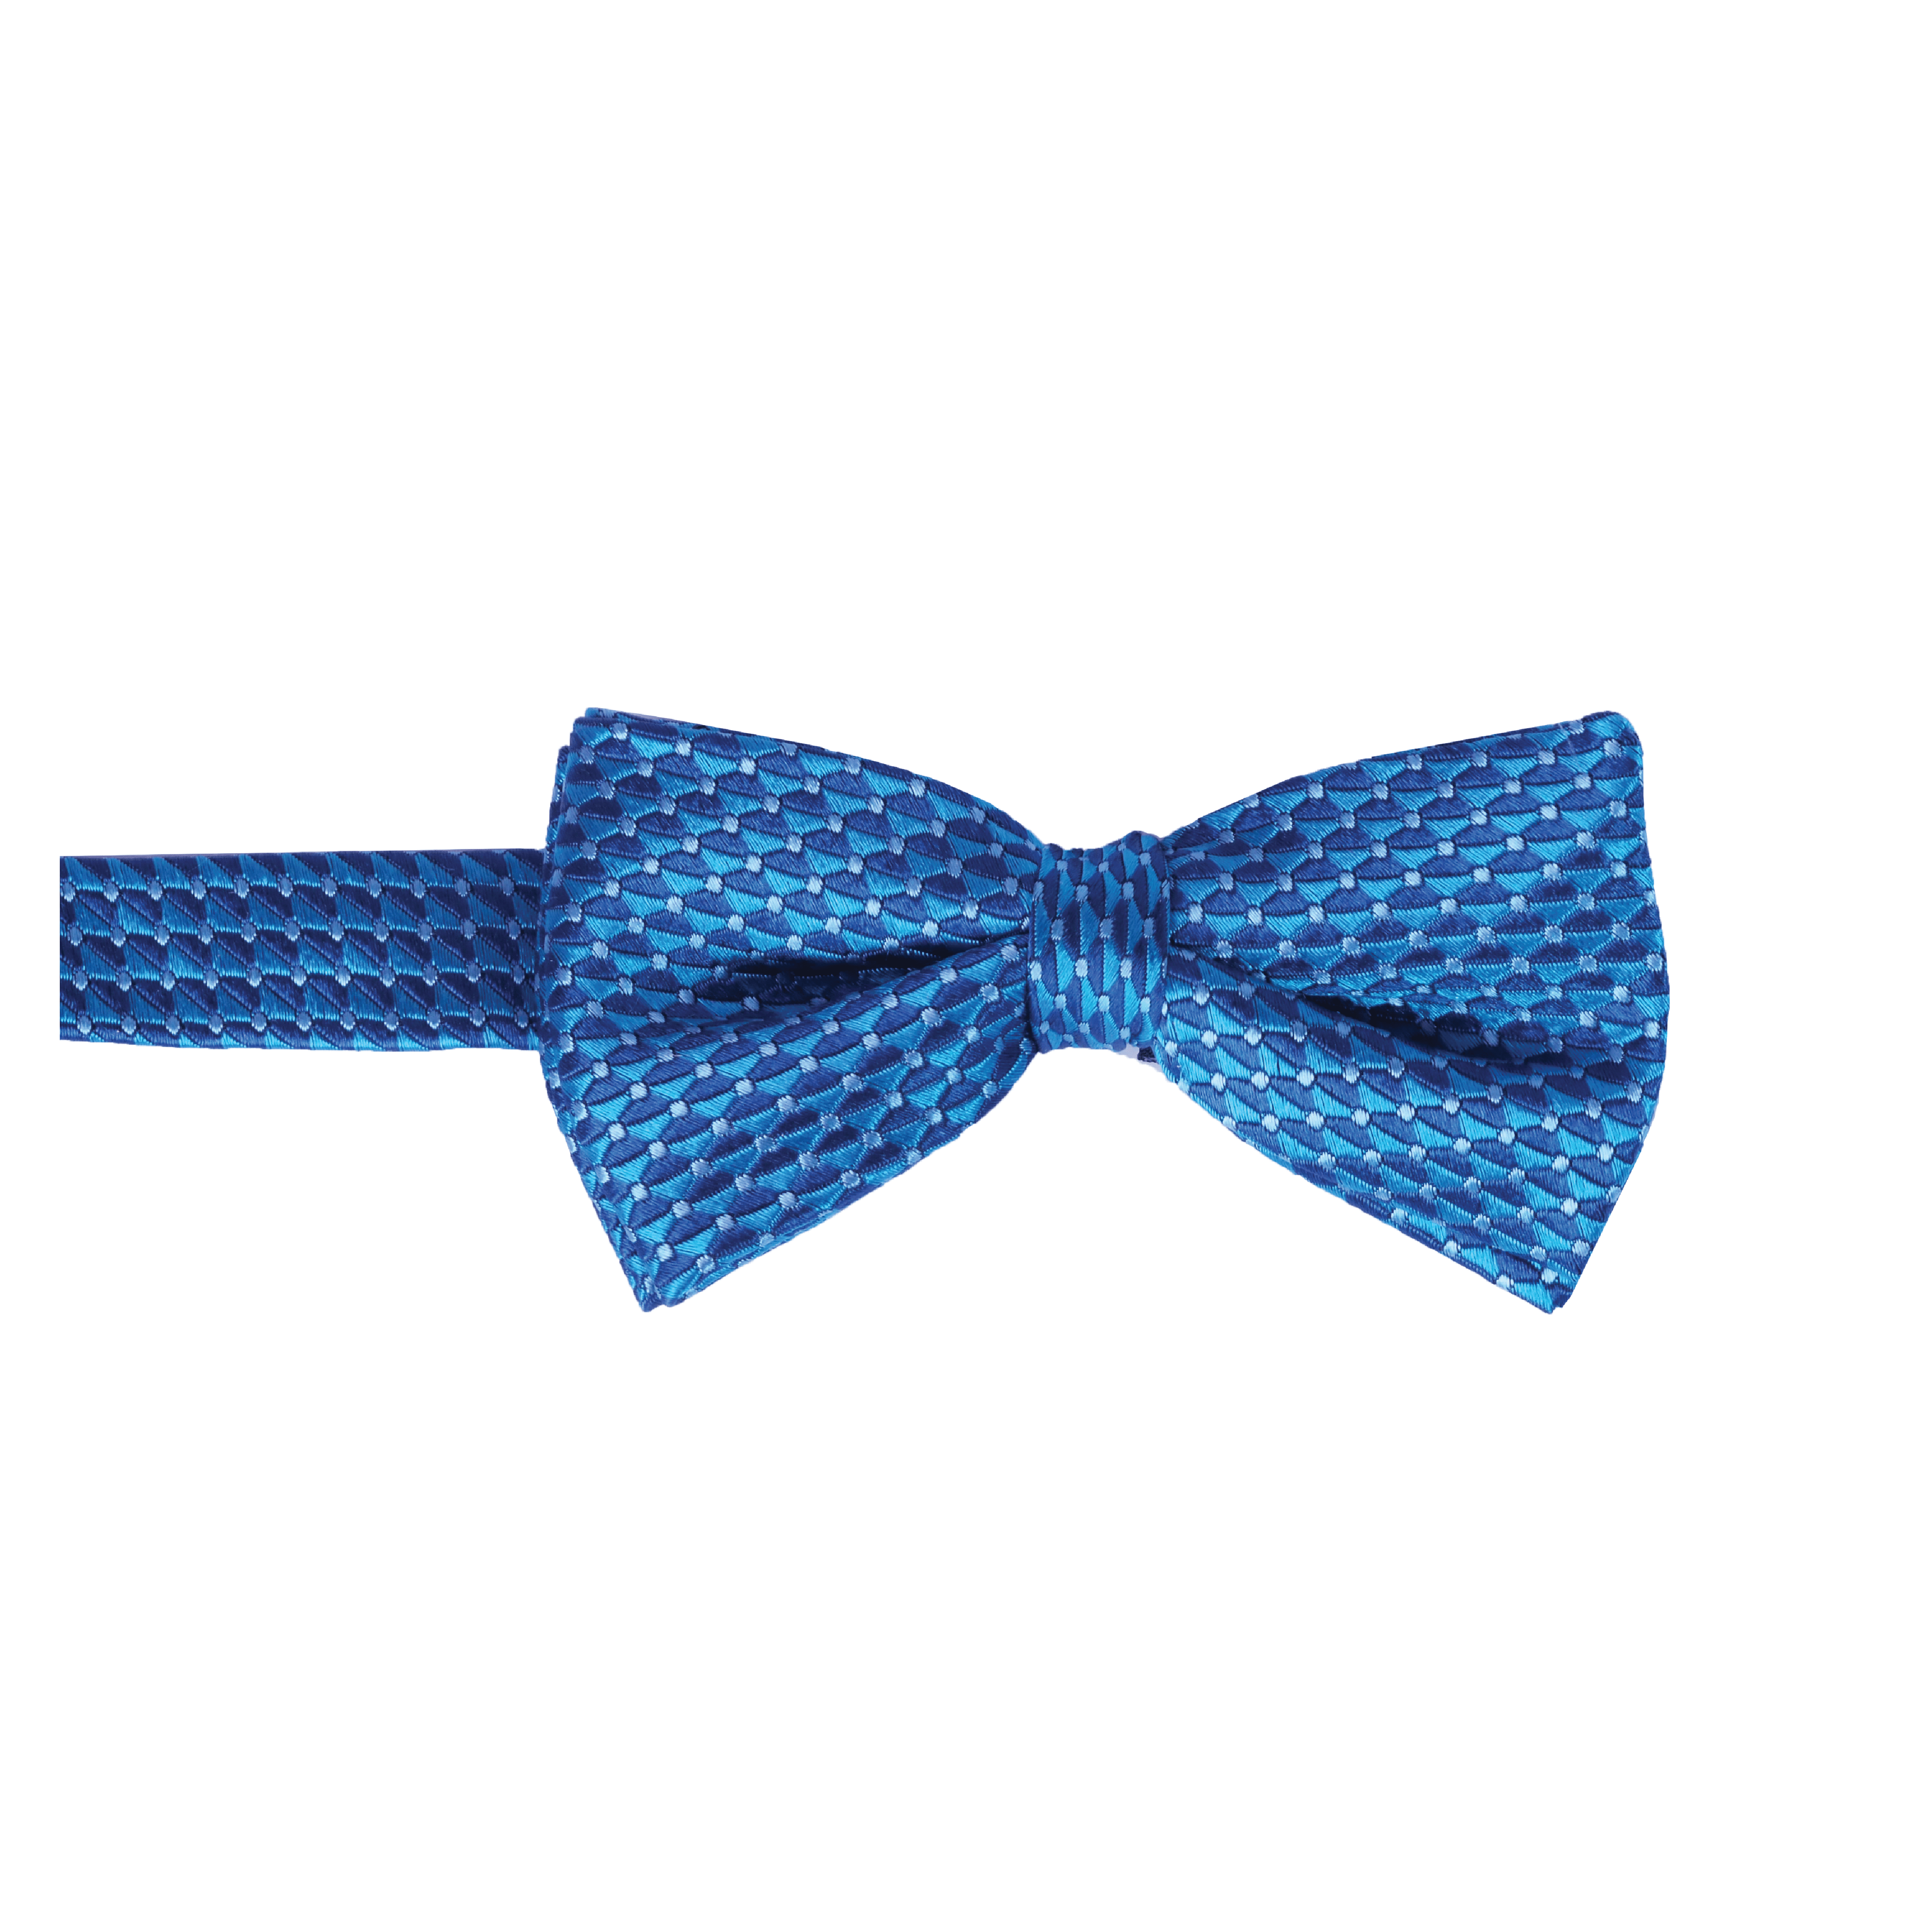 Sailor's Edge Bow Tie (100% Silk)